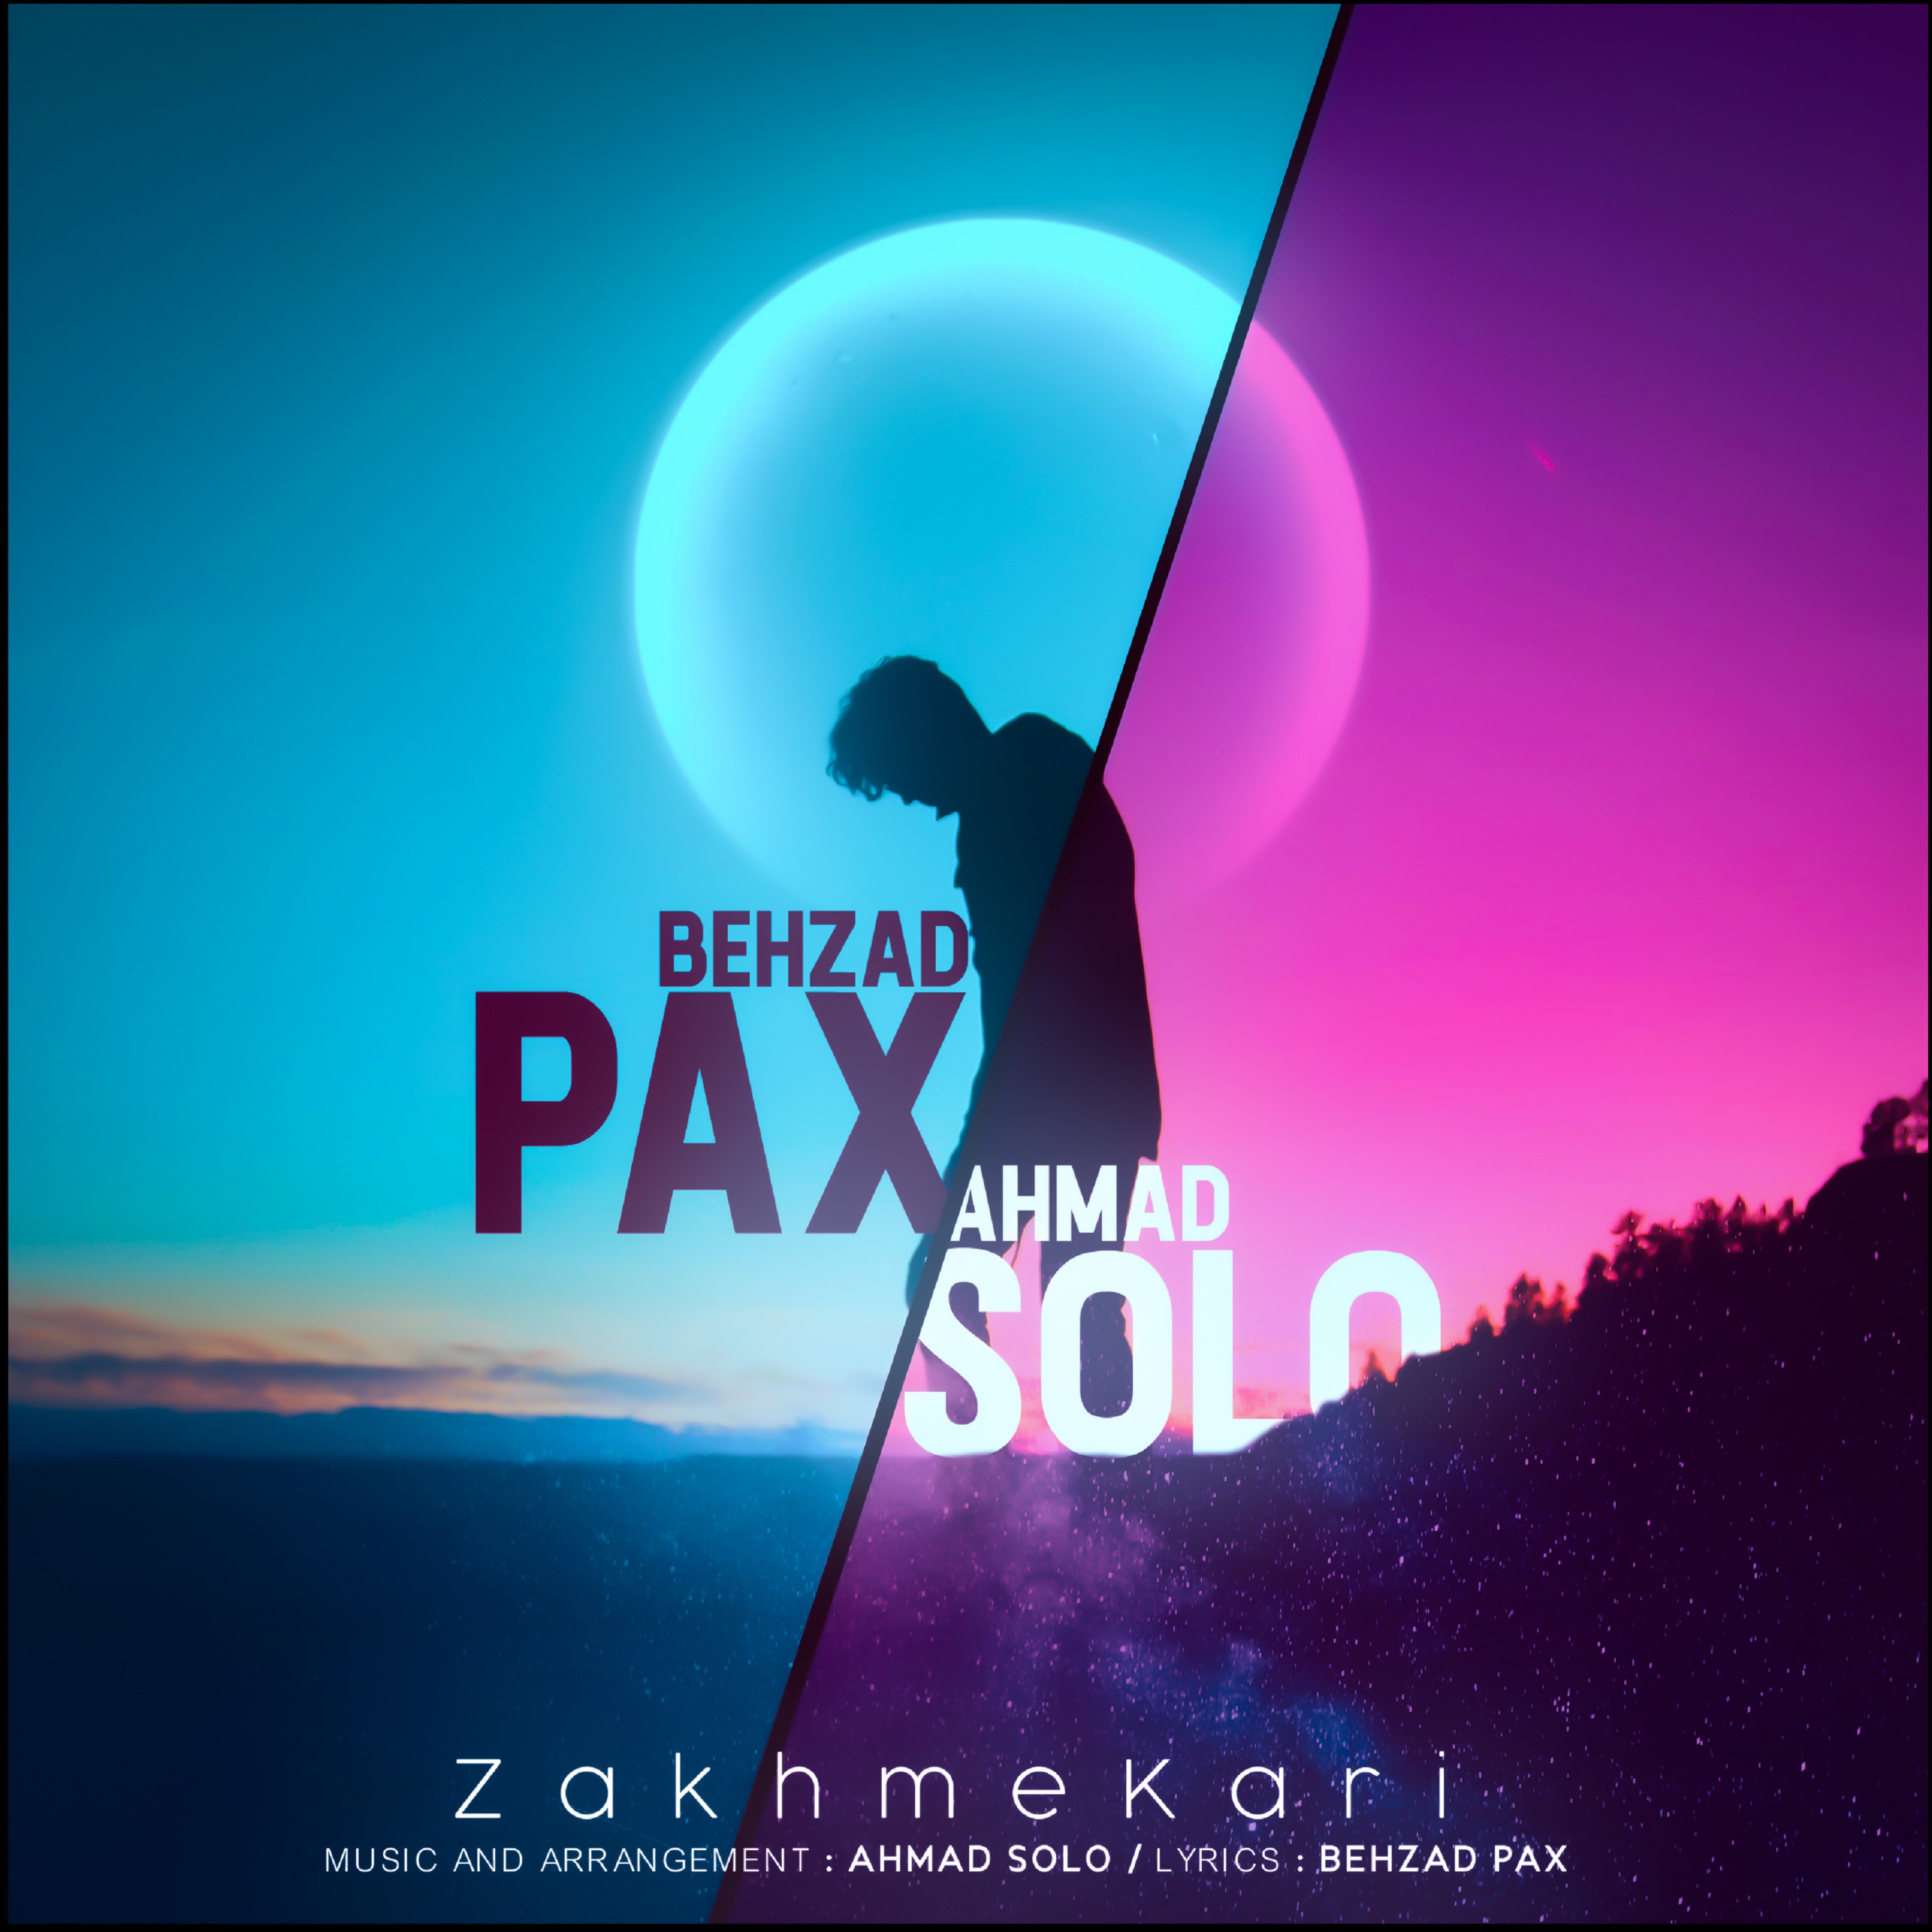  دانلود آهنگ جدید بهزاد پکس و احمد سلو - شلیک | Download New Music By Behzad Pax & Ahmad Solo - Shelik